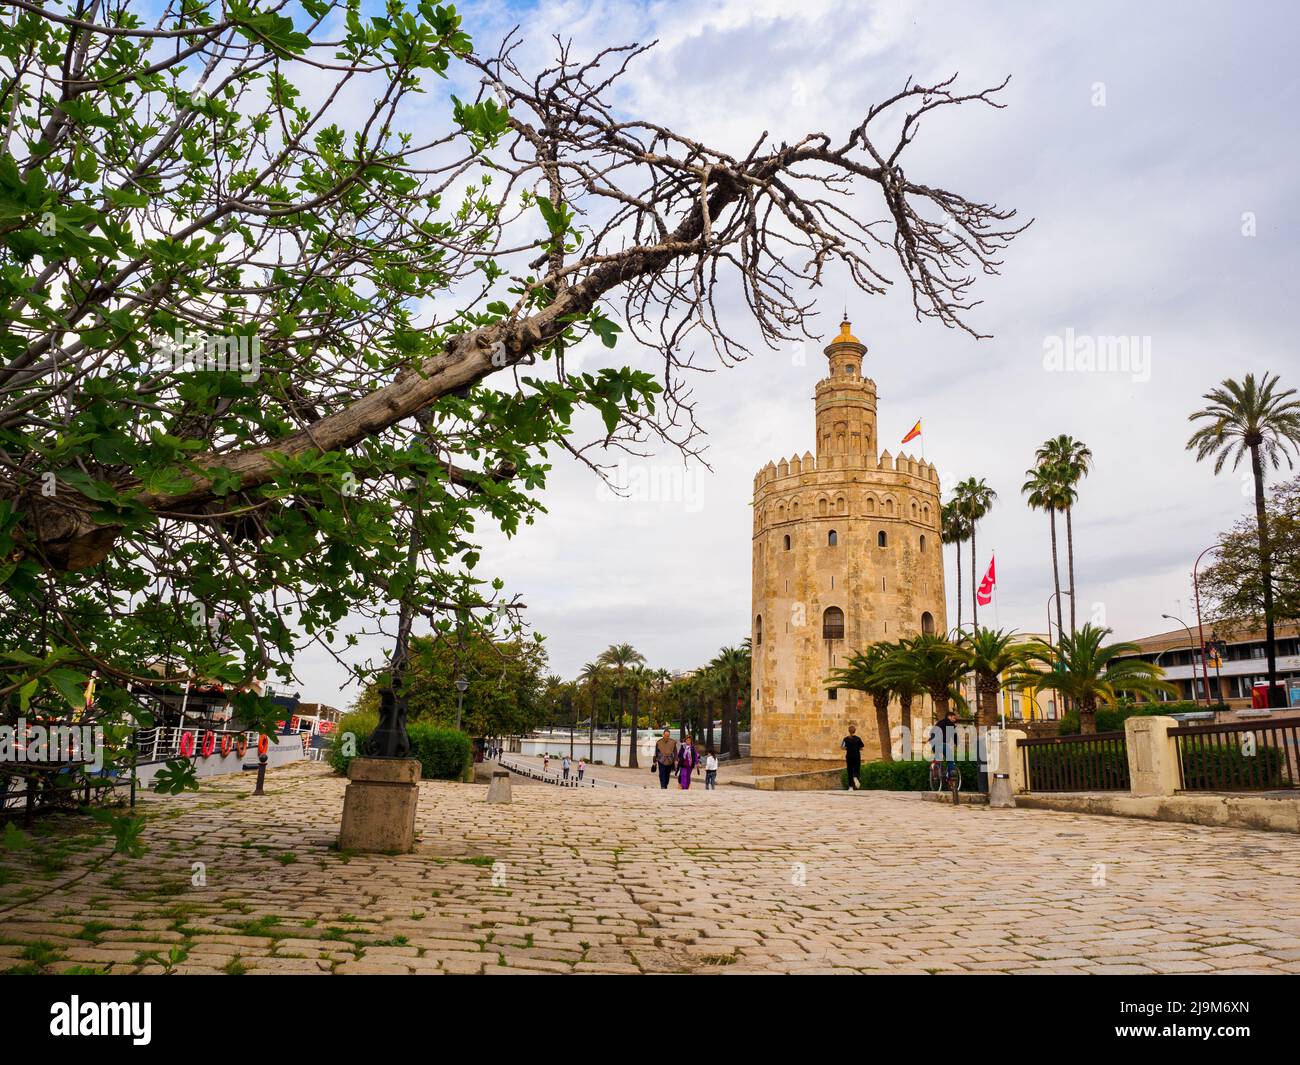 Der 13.. Jahrhundert dodekagonale militärische Wachturm Torre del Oro (Turm des Goldes) - Sevilla, Spanien Stockfoto